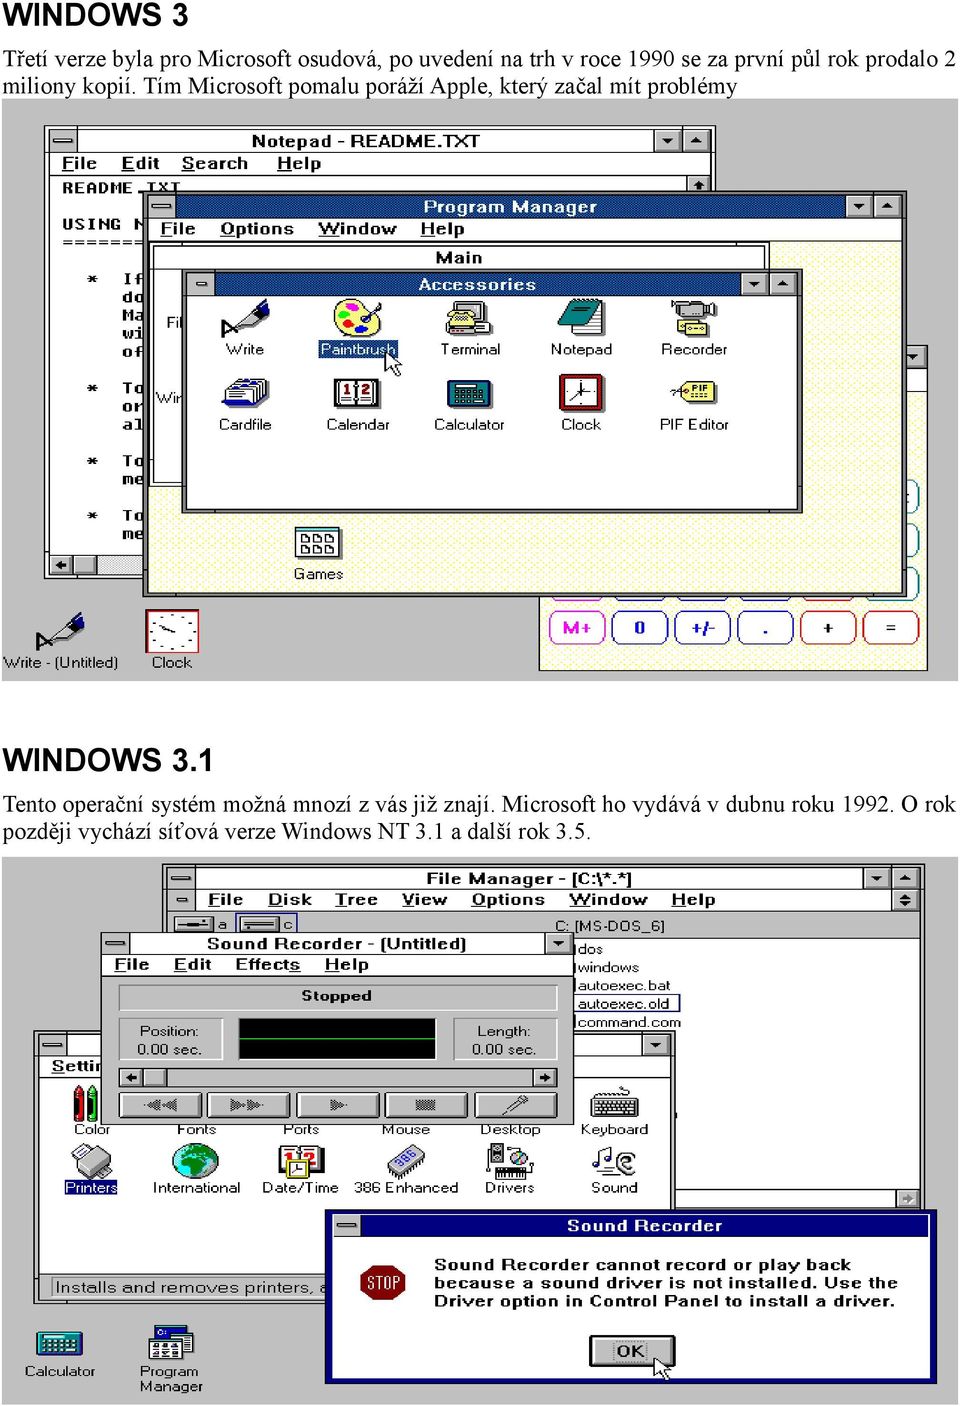 Tím Microsoft pomalu poráží Apple, který začal mít problémy WINDOWS 3.